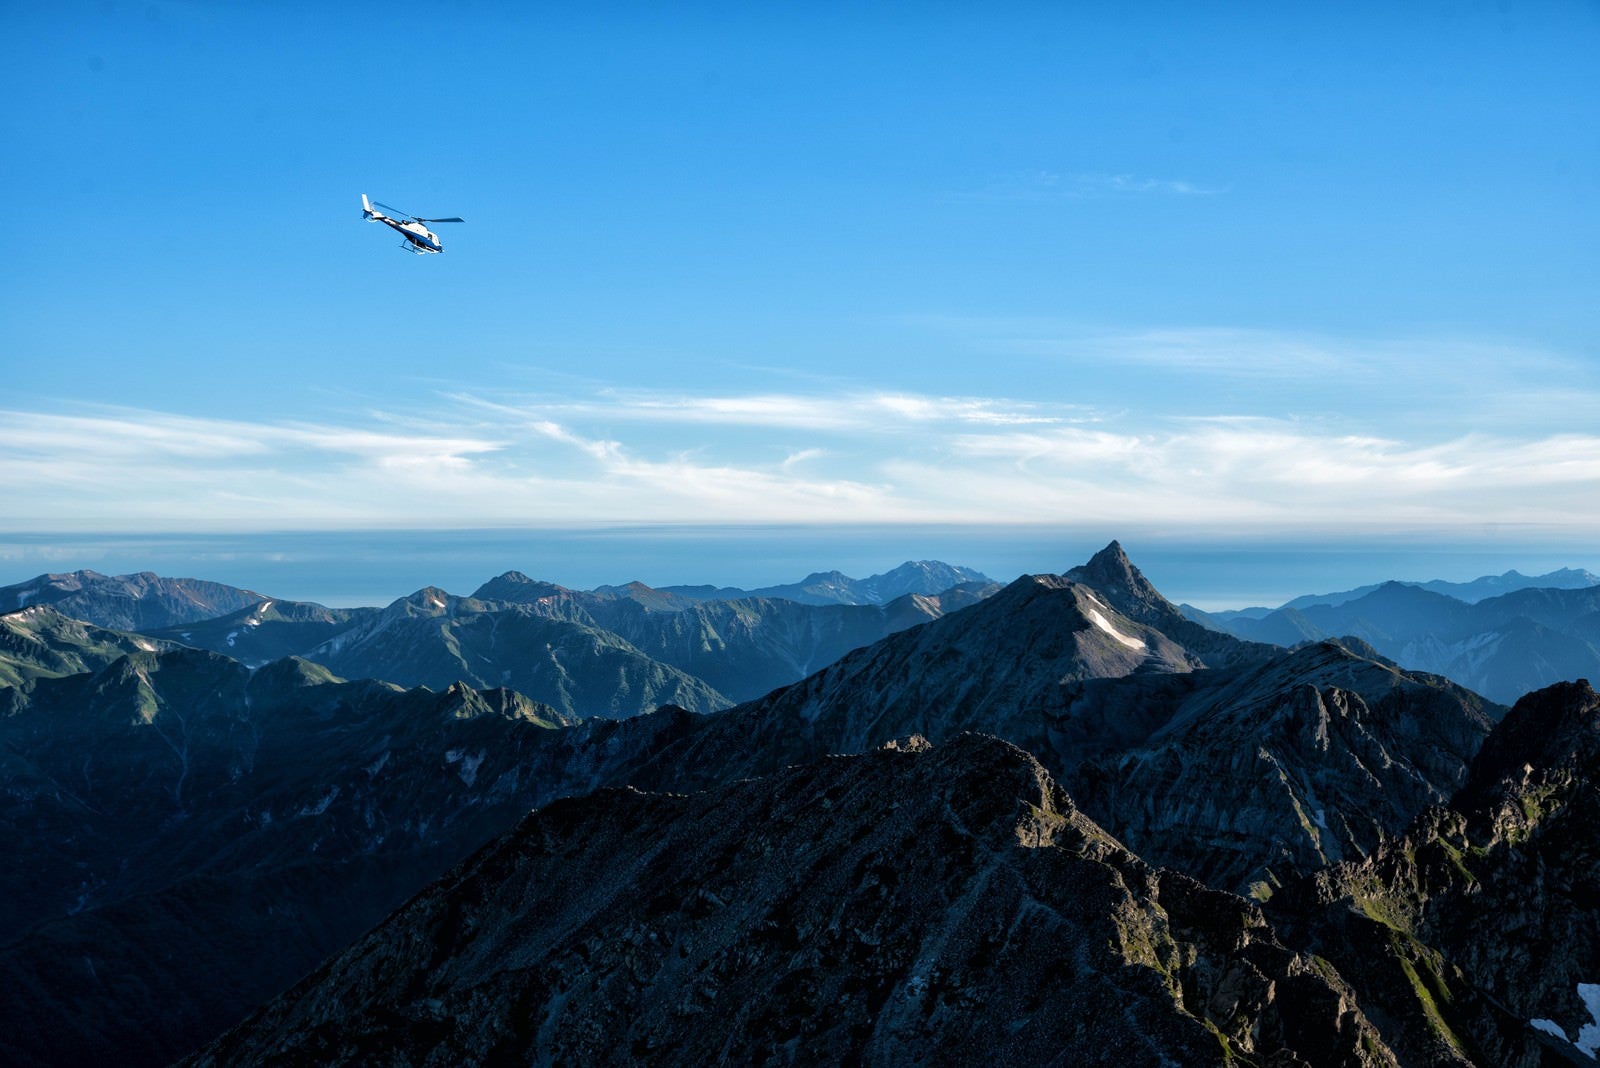 「登山道から望む北アルプスとヘリコプター」の写真